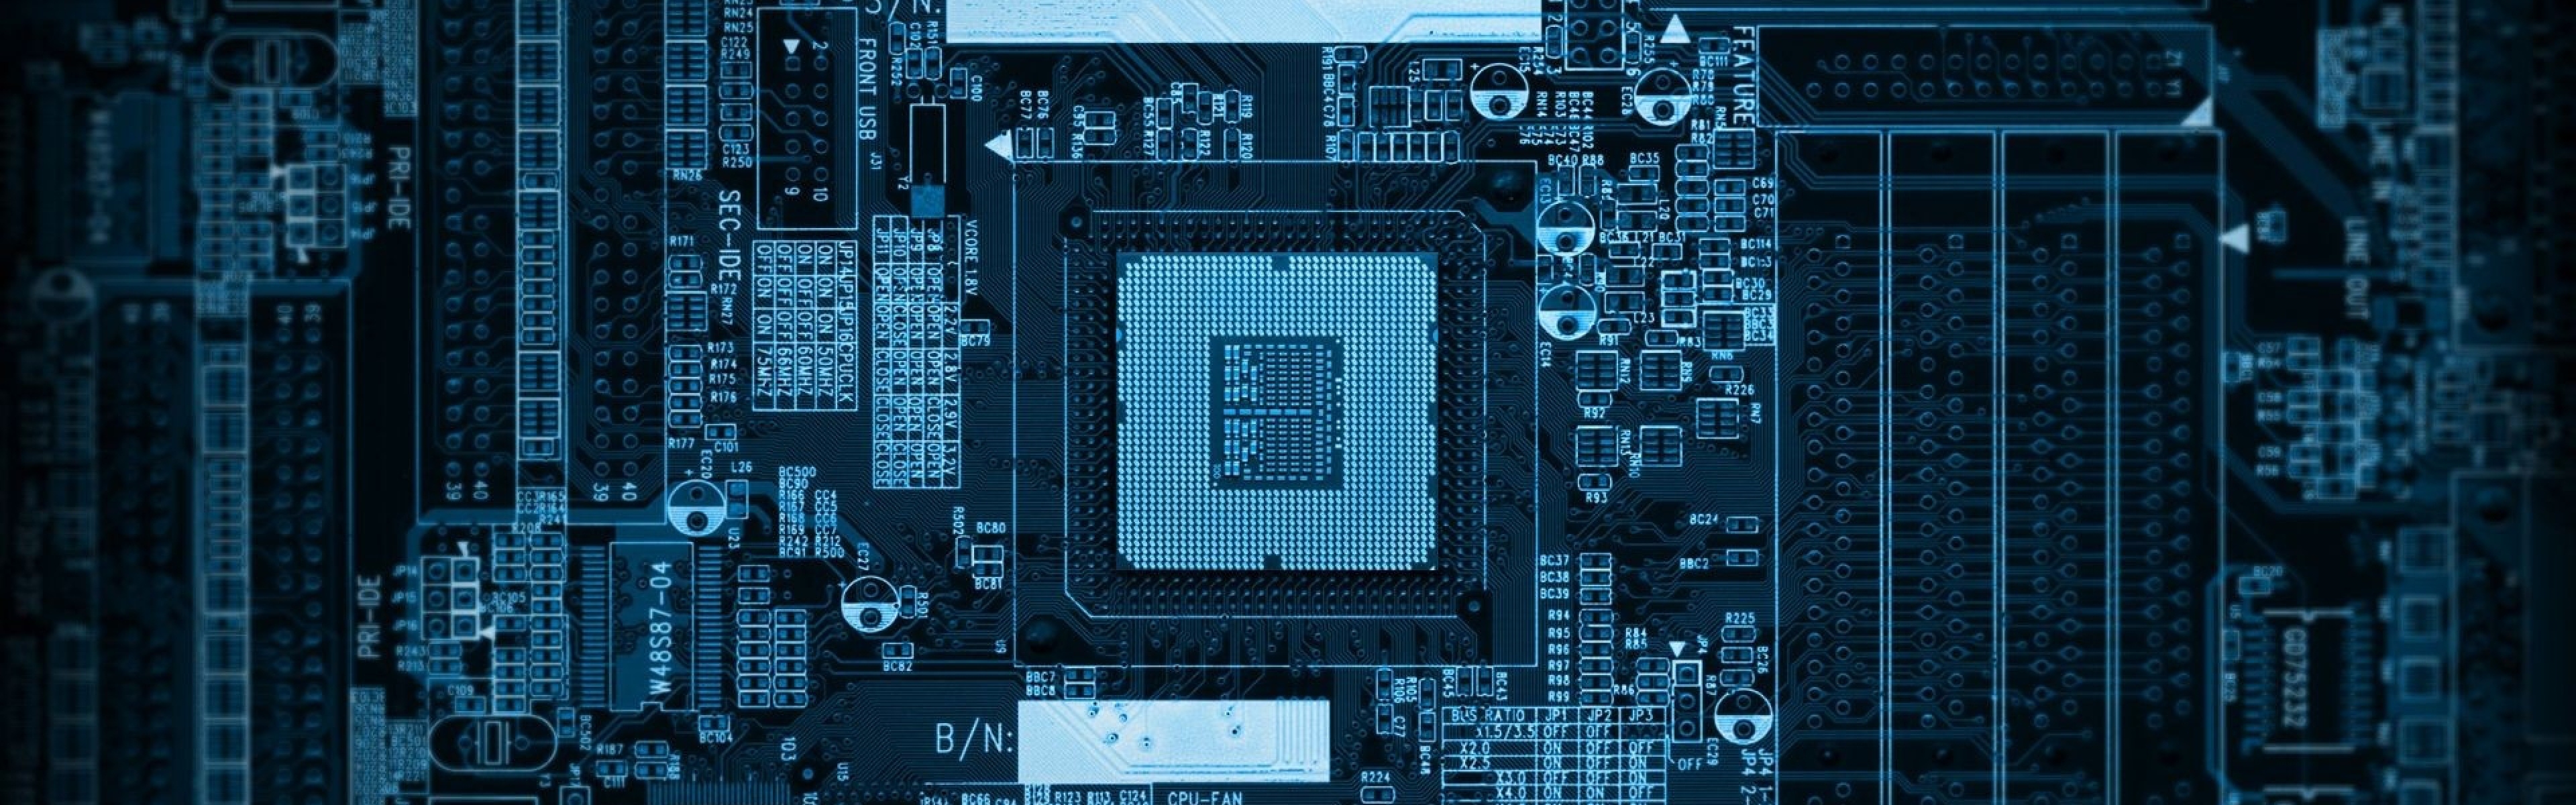 Chip Puter Microchip Processor Wallpaper